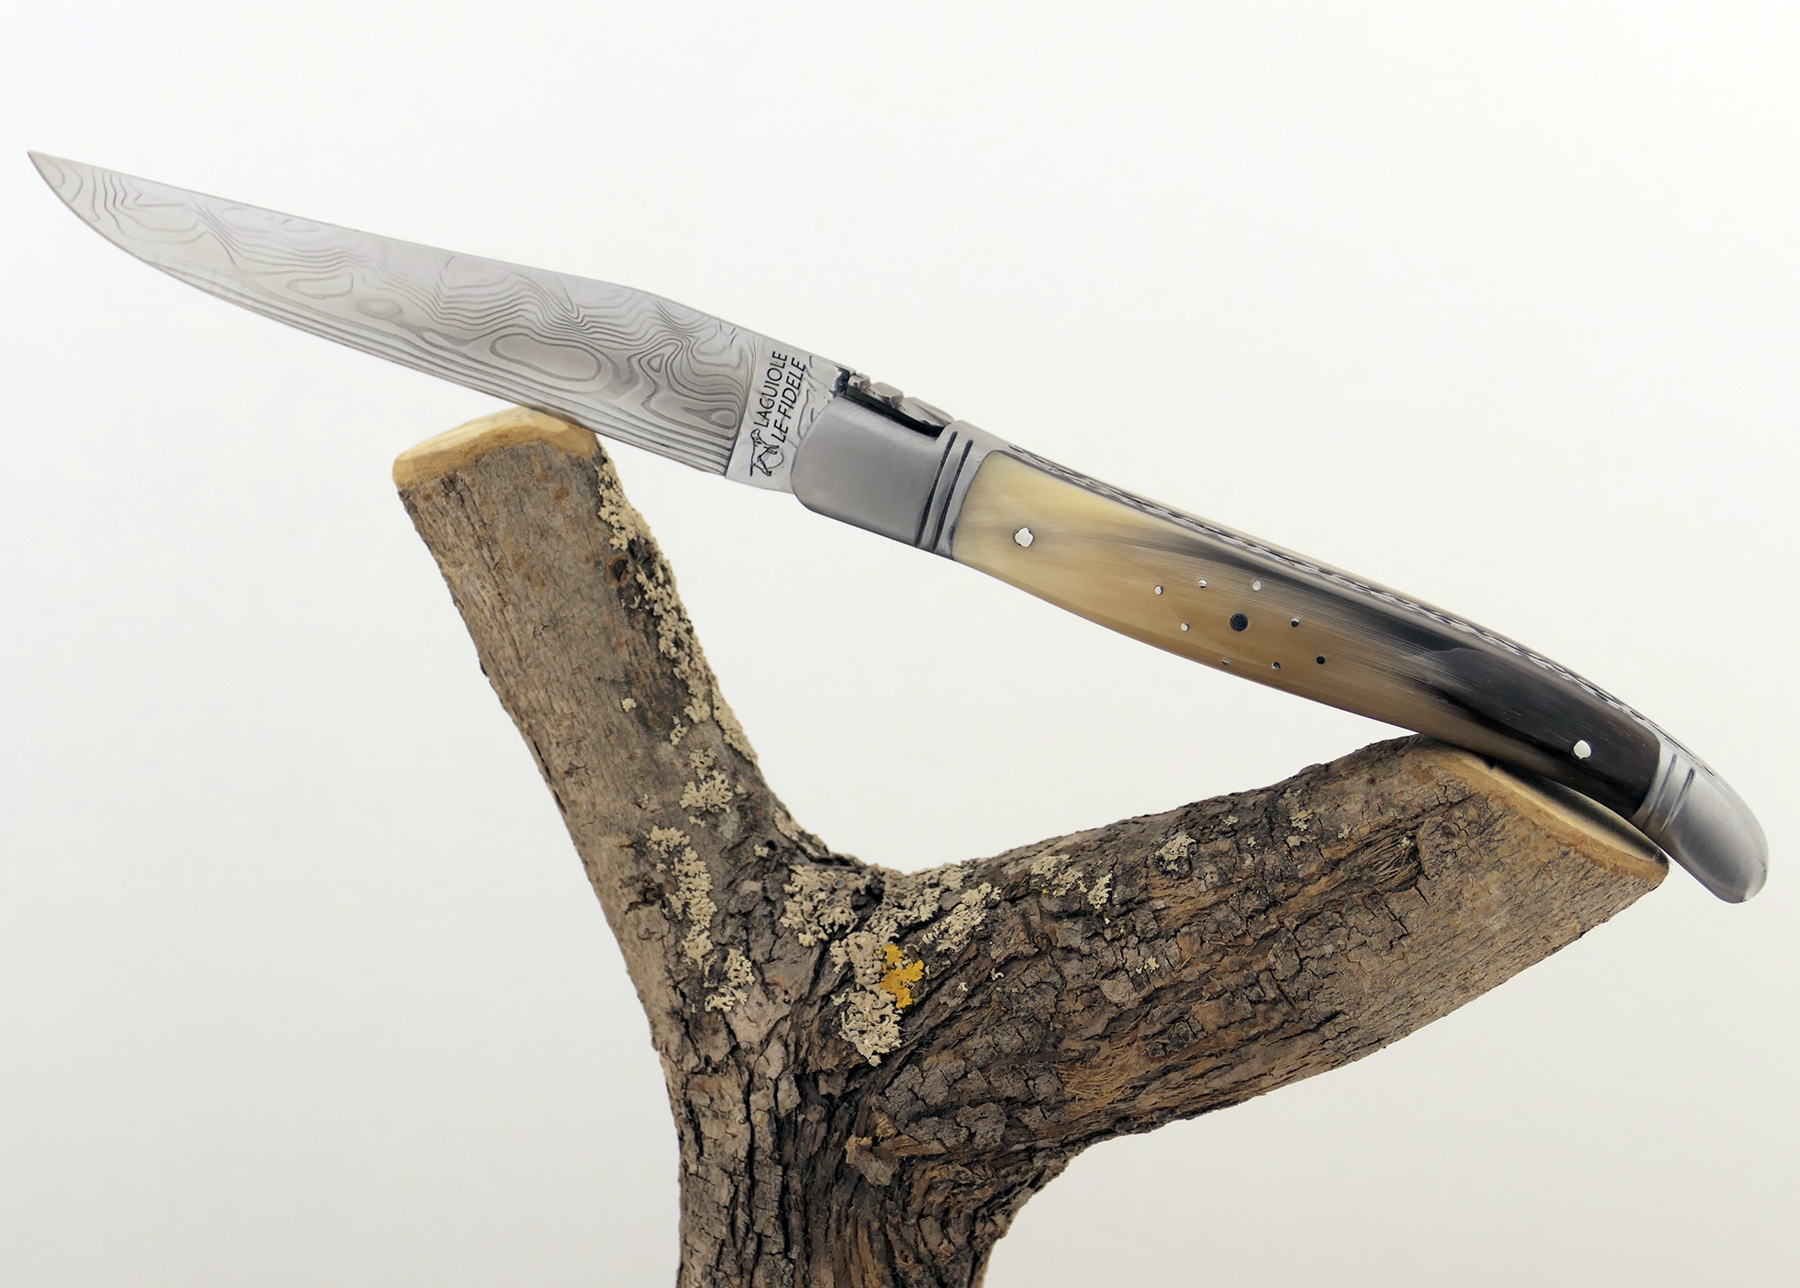 Steak knife set with blond buffalo horn handles - Officine Gullo